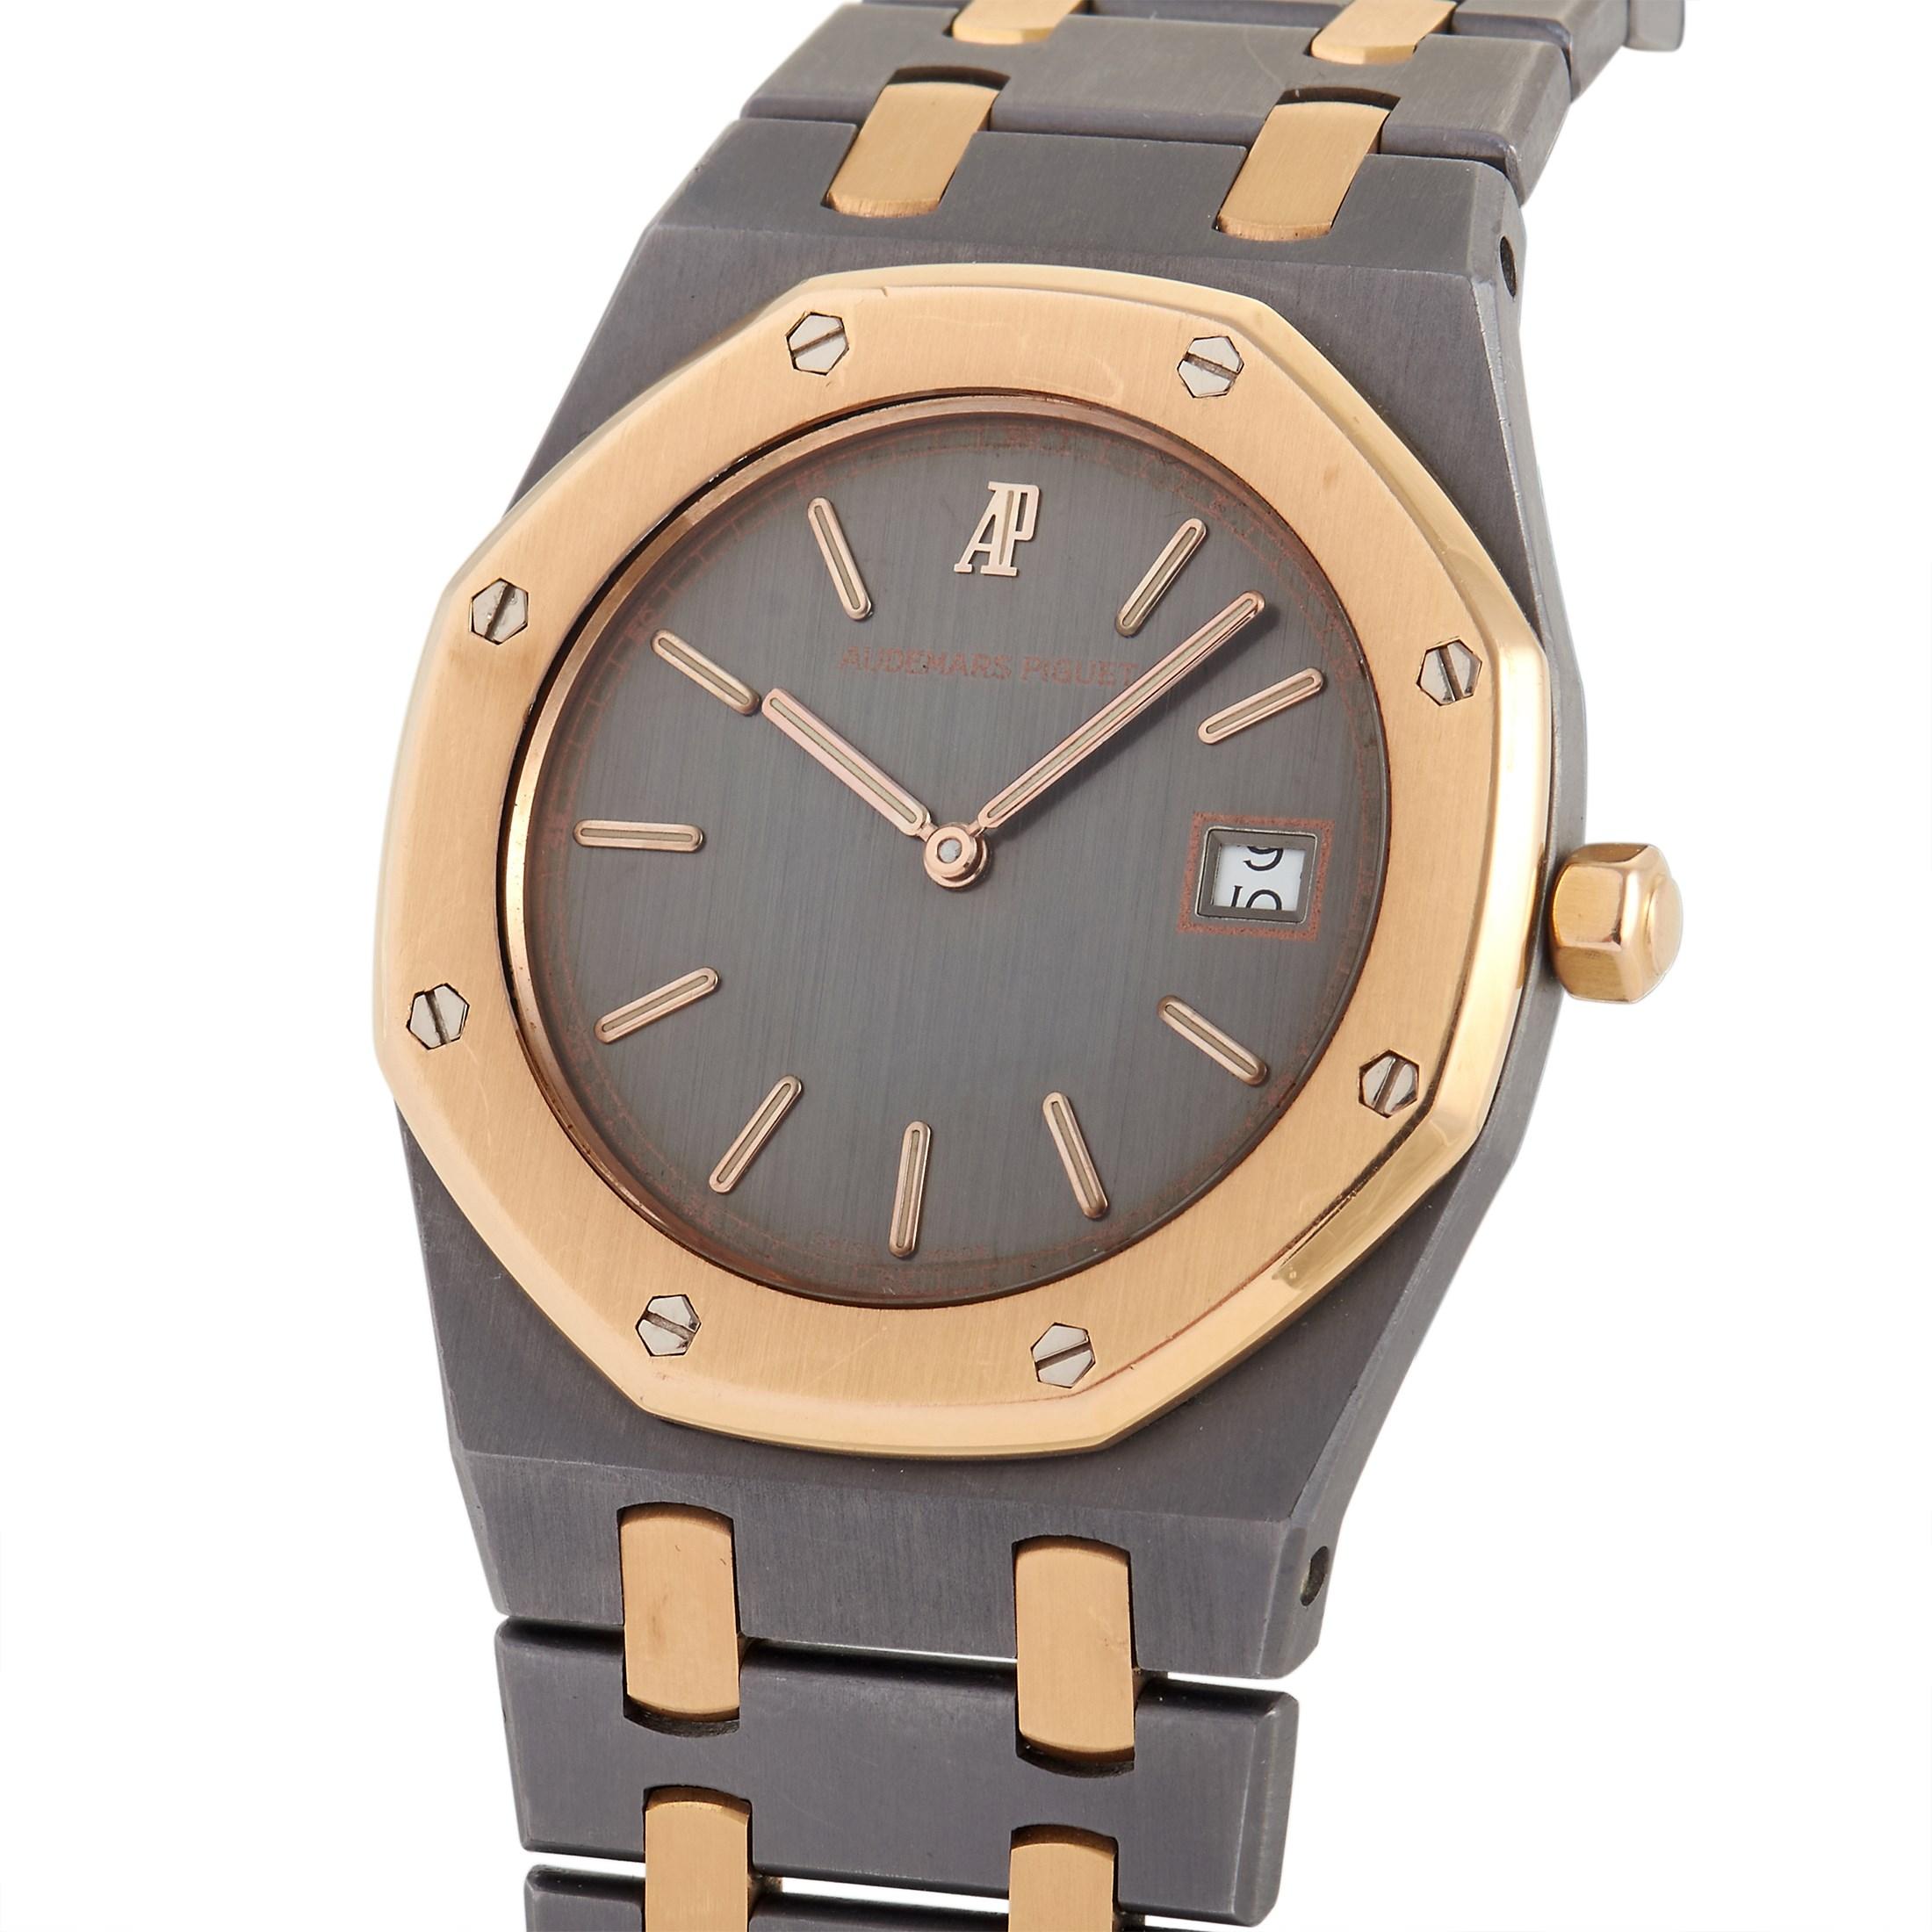 Diese Audemars Piguet Royal Oak Tantalum Rose Gold Watch 56175TR-OO-0789TR-01 aus blau-grauem Metall ist eine einzigartige Ergänzung für jede Uhrensammlung. Diese zweifarbige Schönheit verfügt über die achteckige Royal Oak-Lünette aus 18 Karat